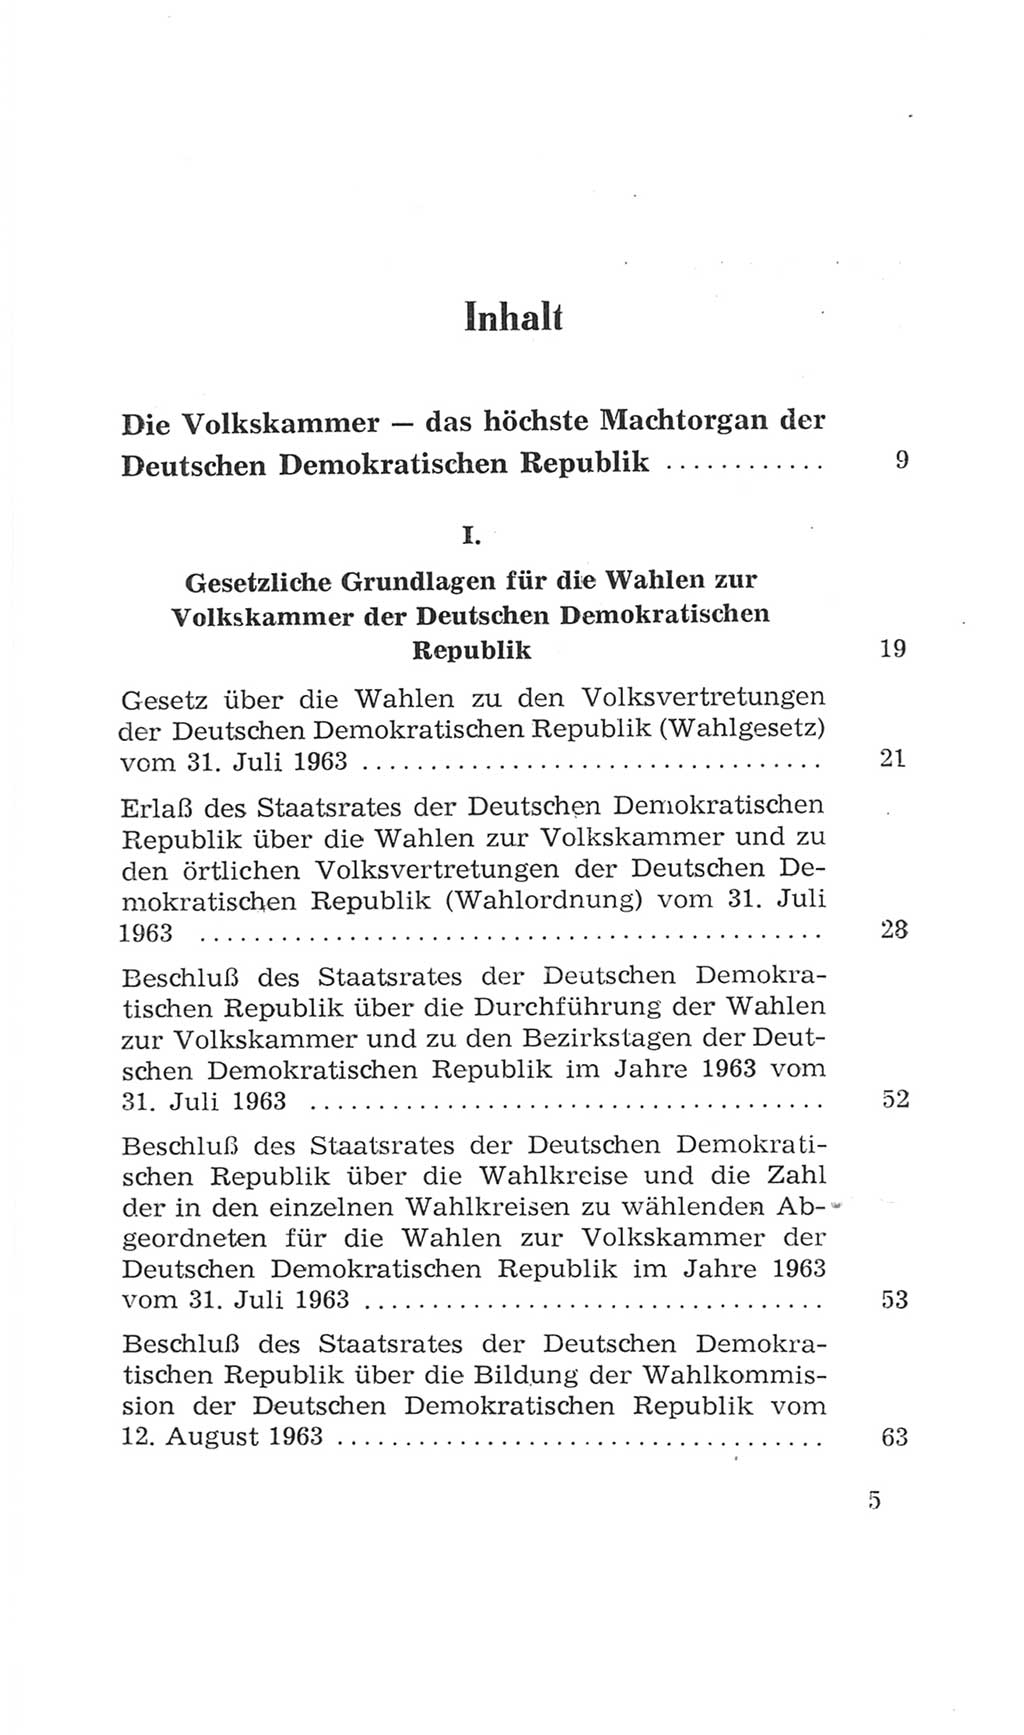 Volkskammer (VK) der Deutschen Demokratischen Republik (DDR), 4. Wahlperiode 1963-1967, Seite 5 (VK. DDR 4. WP. 1963-1967, S. 5)